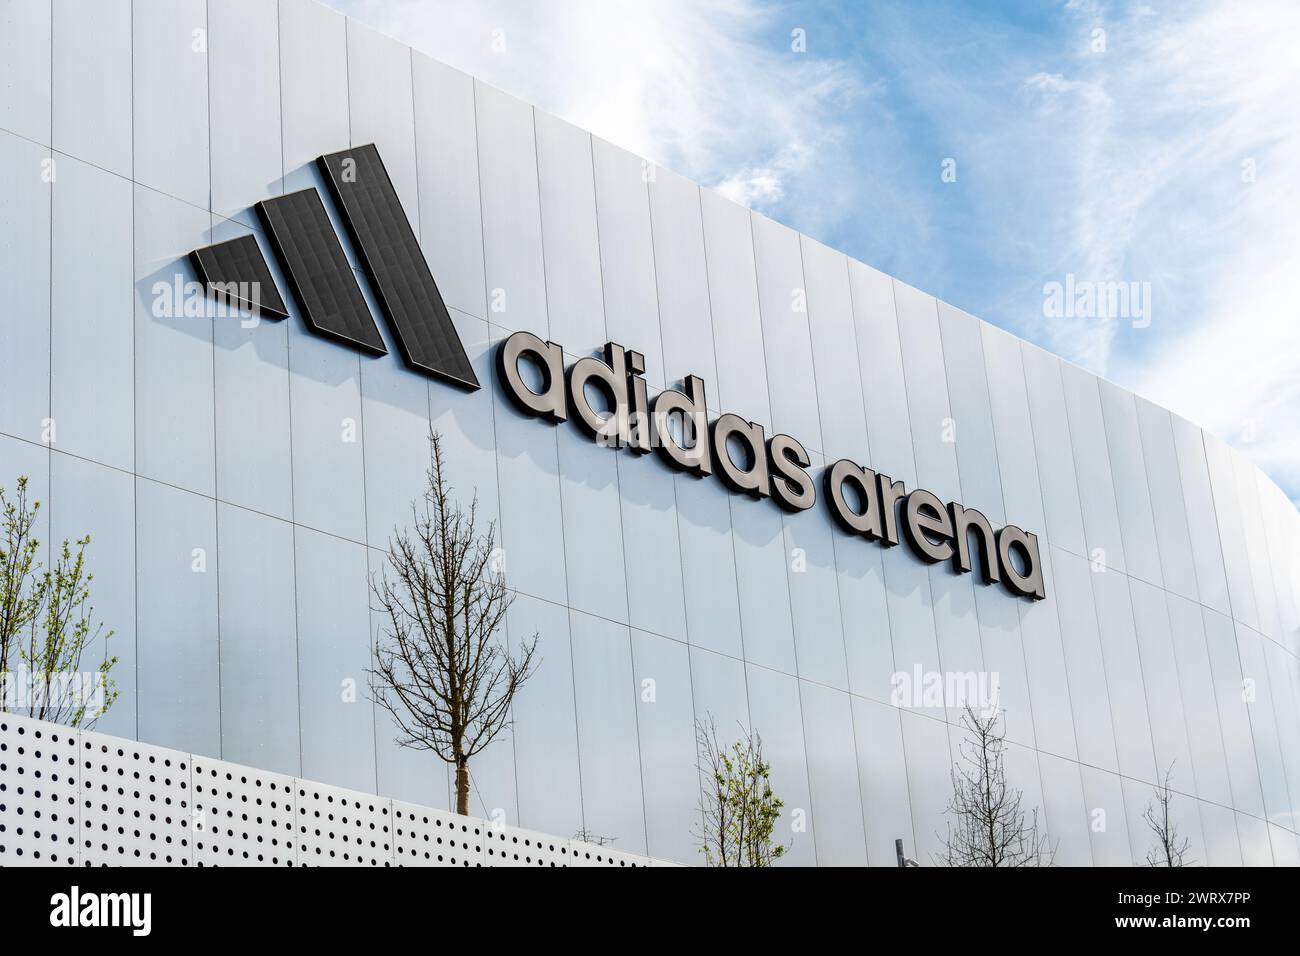 Schild und Logo der Adidas Arena, auch bekannt als Arena Porte de la Chapelle, eine Mehrzweckhalle, in der Sportveranstaltungen und Konzerte stattfinden, sowie eine olympia-Veranstaltung Stockfoto